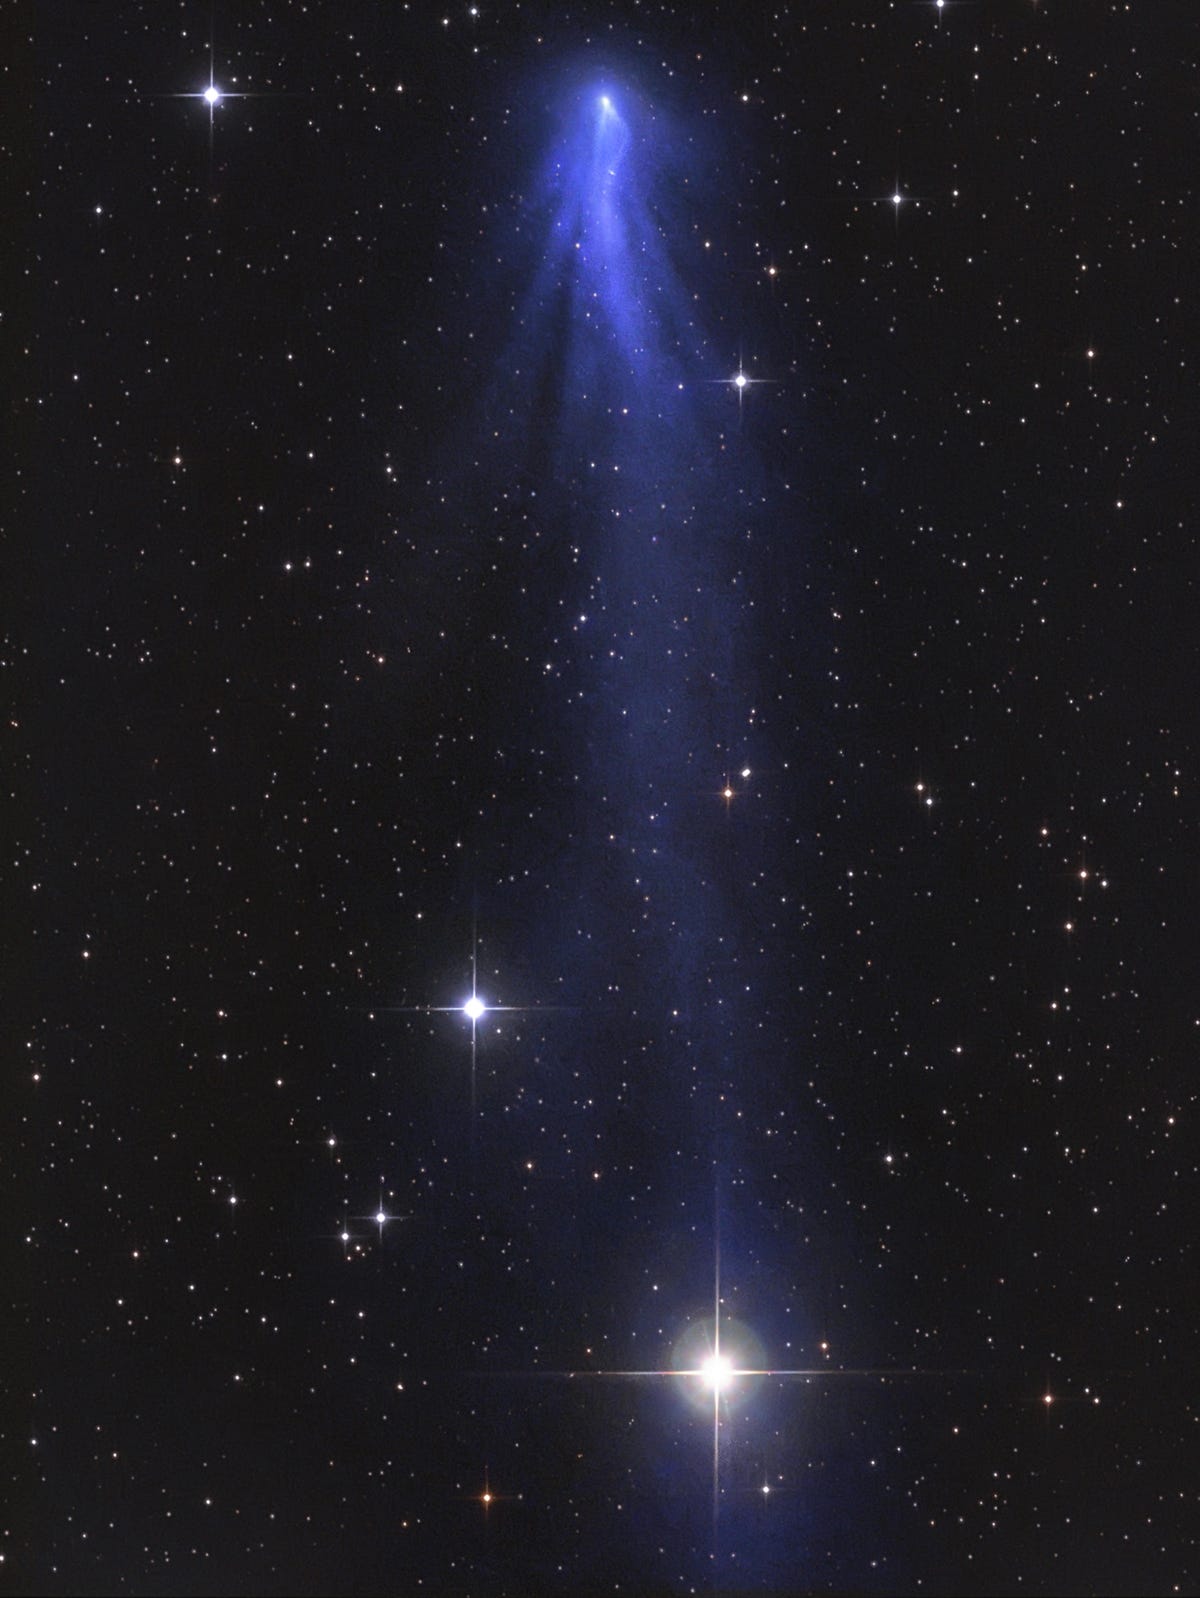 comet-c2016-r2-panstarrs-the-blue-carbon-monoxide-comet-rotating-comet-tails-on-january-19th-2018-c-gerald-rhemann-1